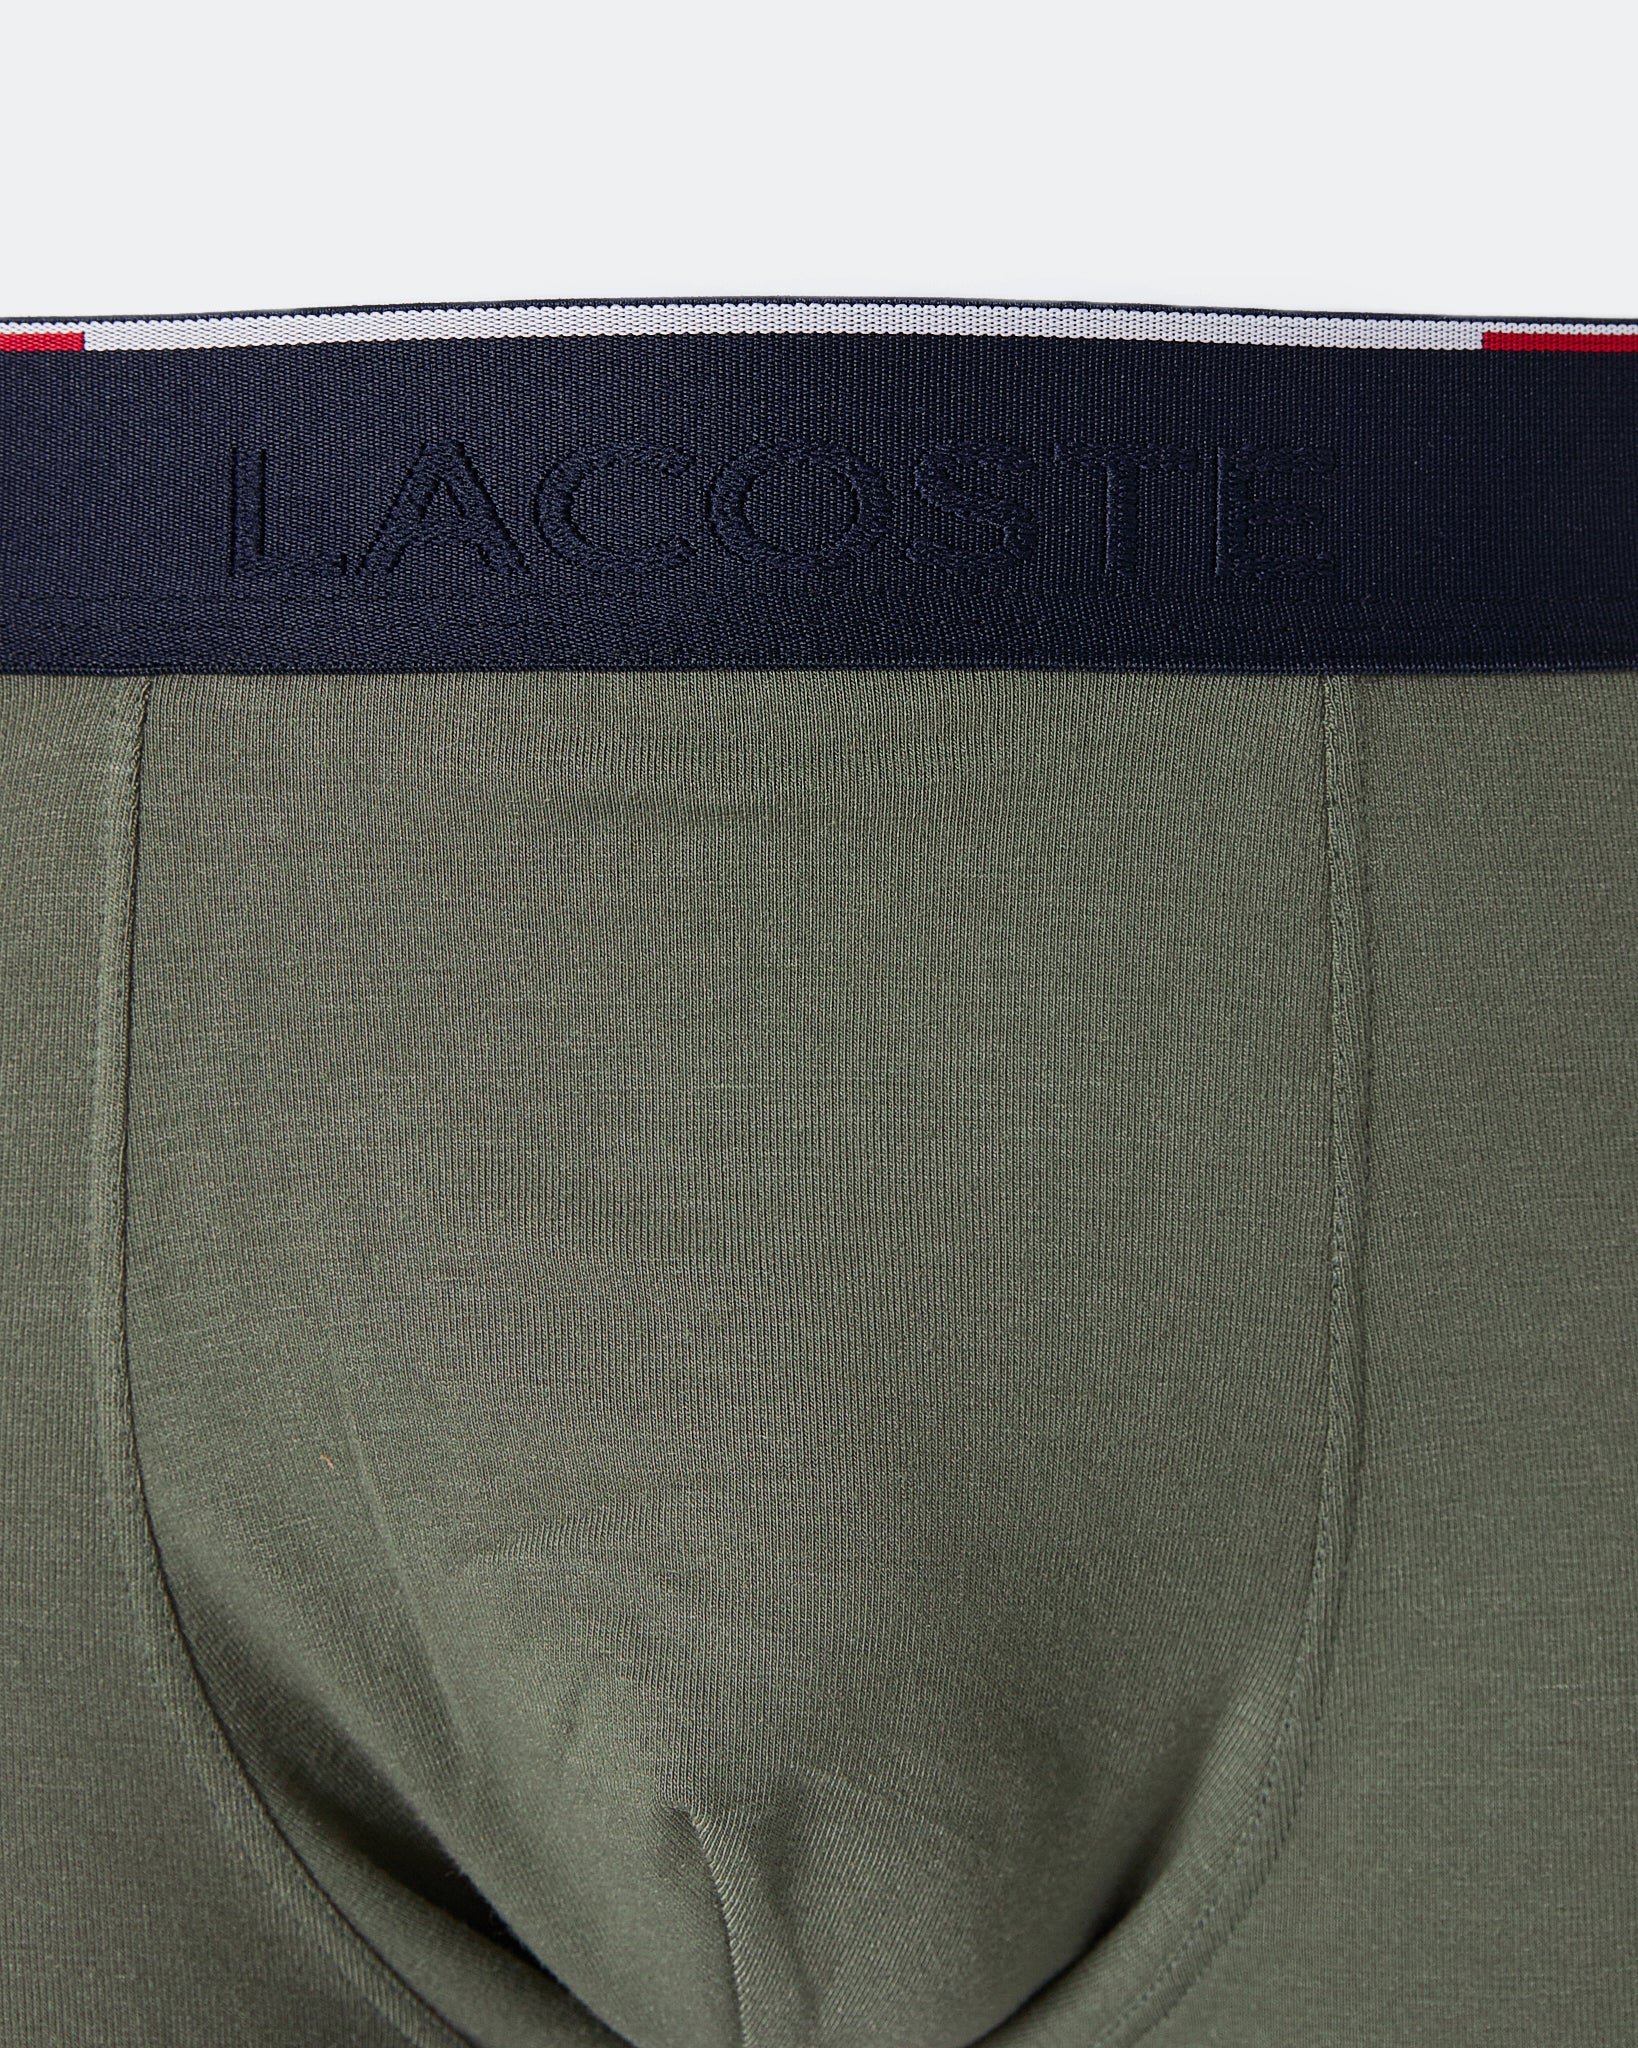 LAC Logo Embroidered Men Green Underwear 5.90